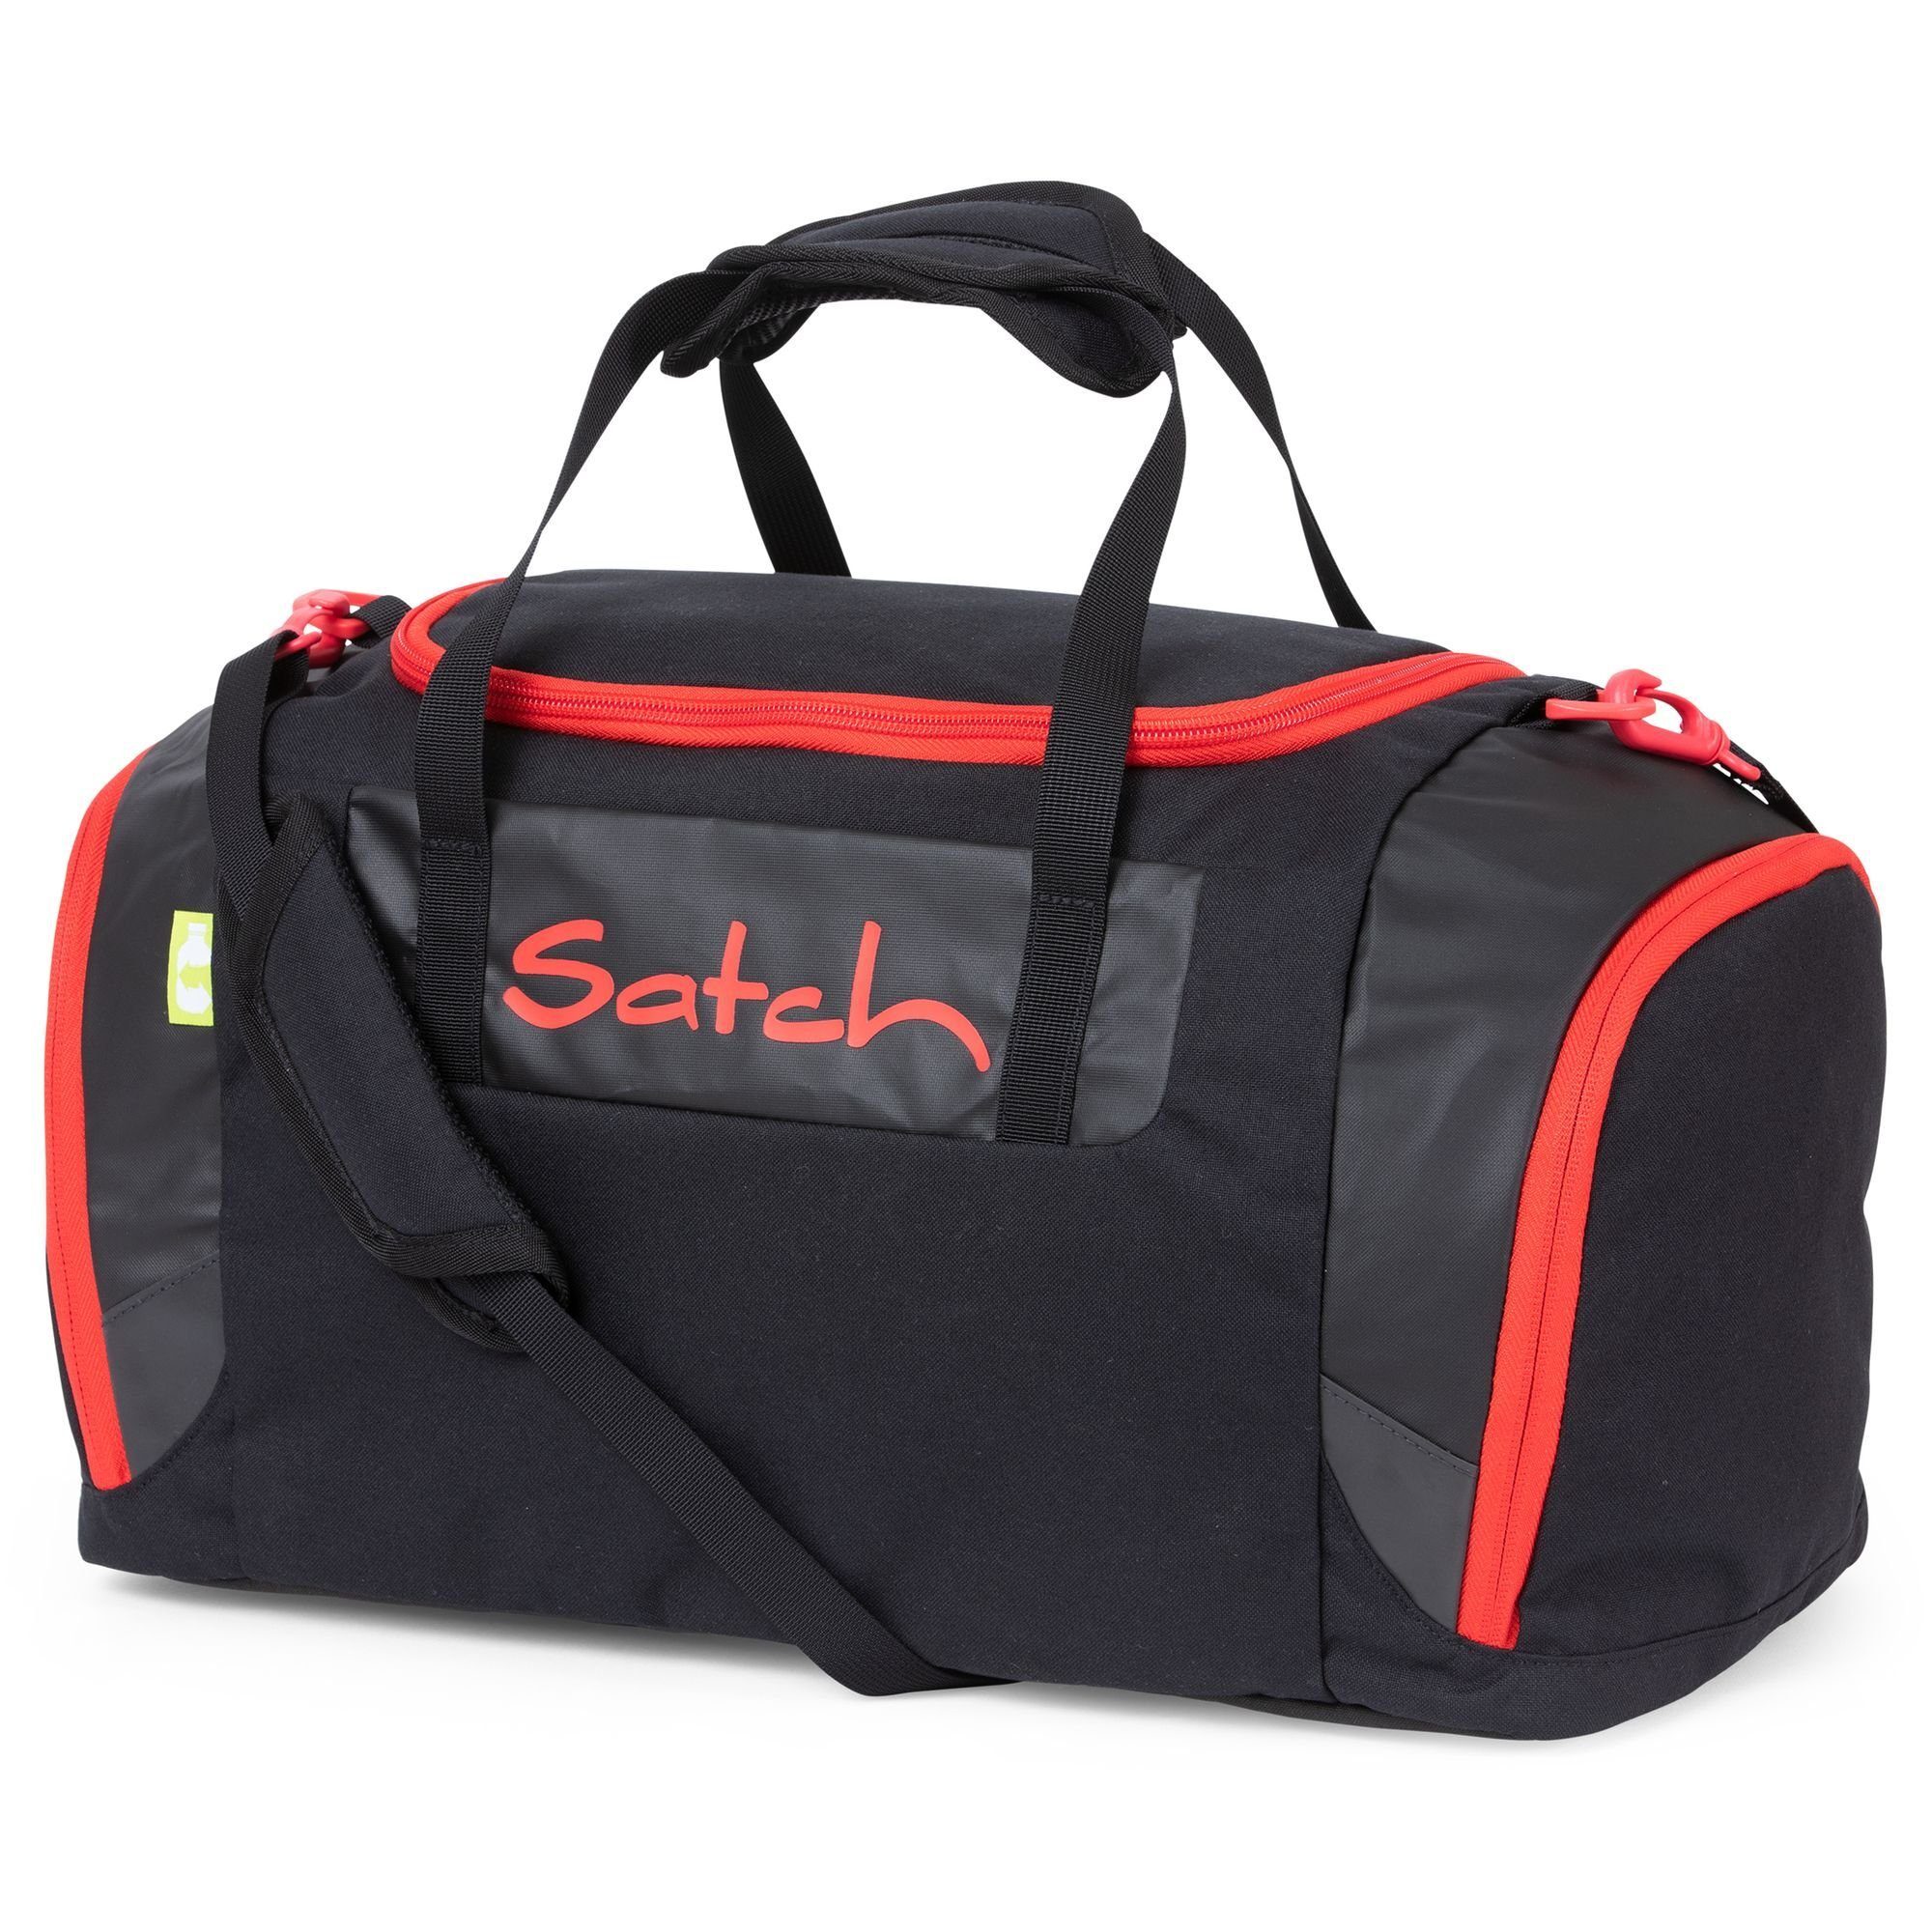 Satch Sporttasche Sporttasche Vivid Blue online kaufen | OTTO